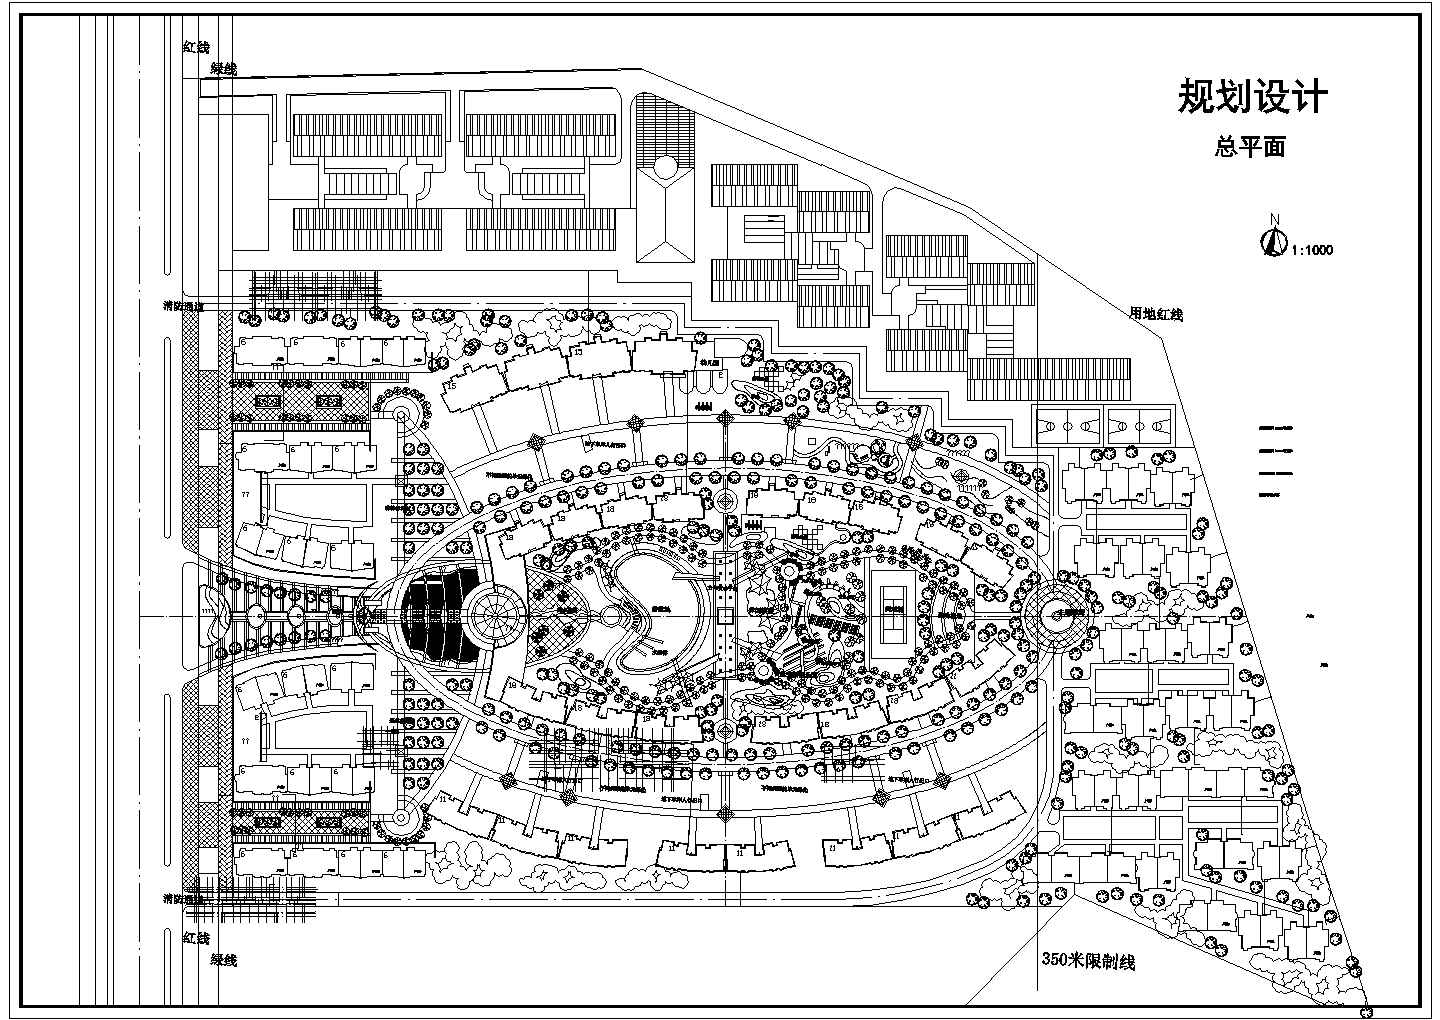 【江苏省】某地区小区规划方案图纸